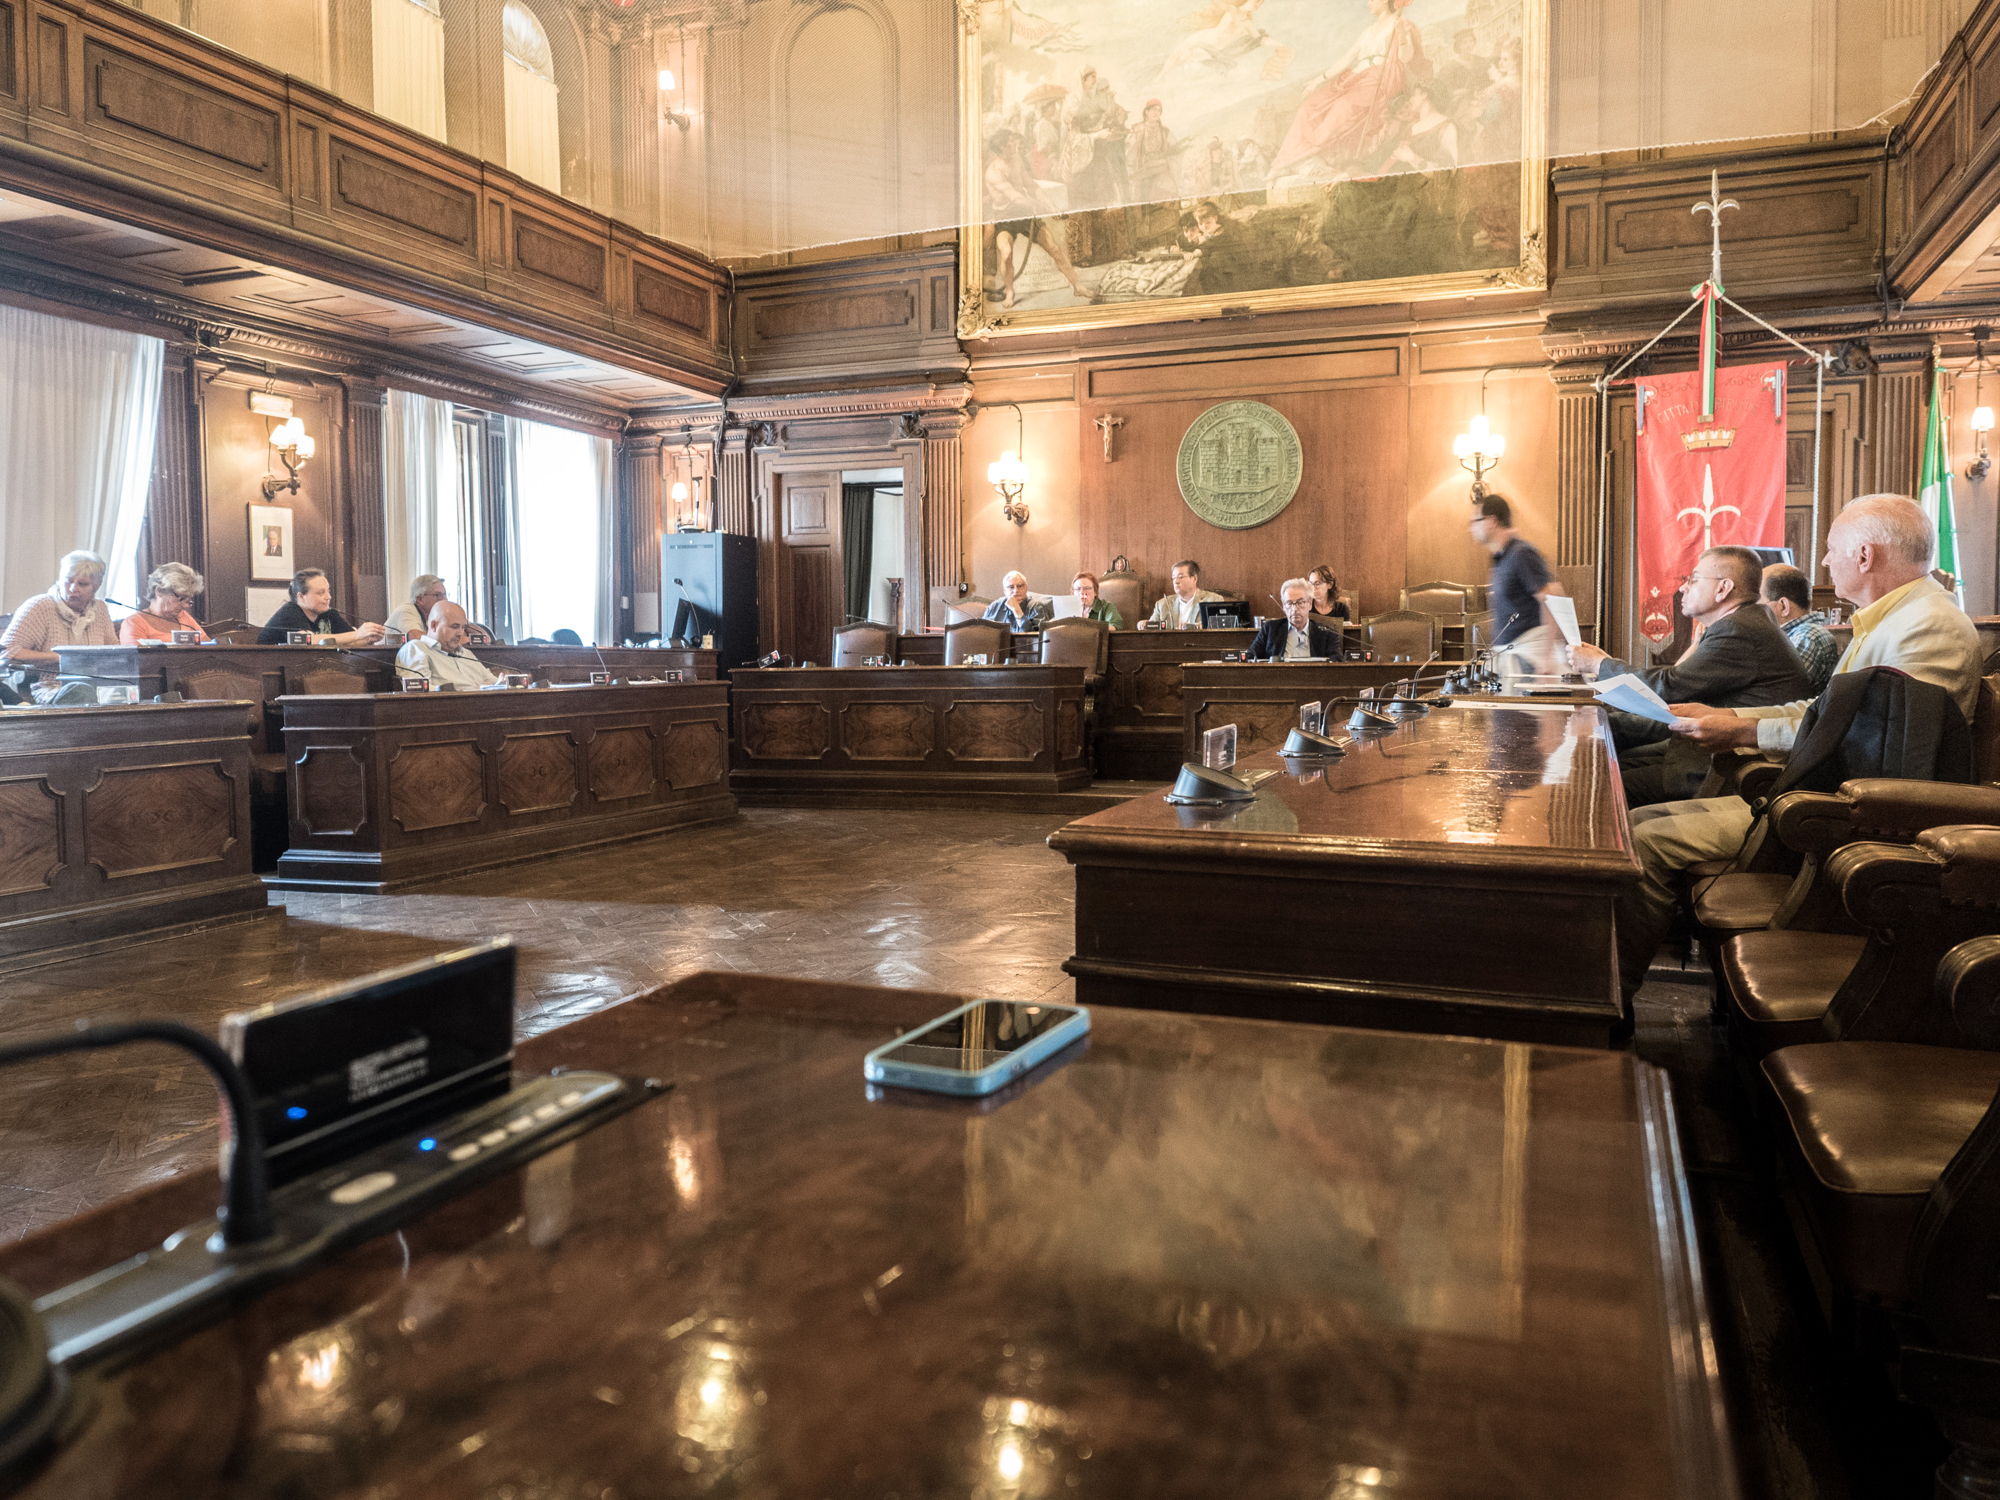  Durante il Consiglio Comunale di Trieste del 11 Settembre 2015 è stata consegnata al sindaco dall'Associazione No Smog una petizione popolare, firmata da 383 cittadini, per conoscere la provenienza, il contenuto e l'eventuale nocività delle polveri 